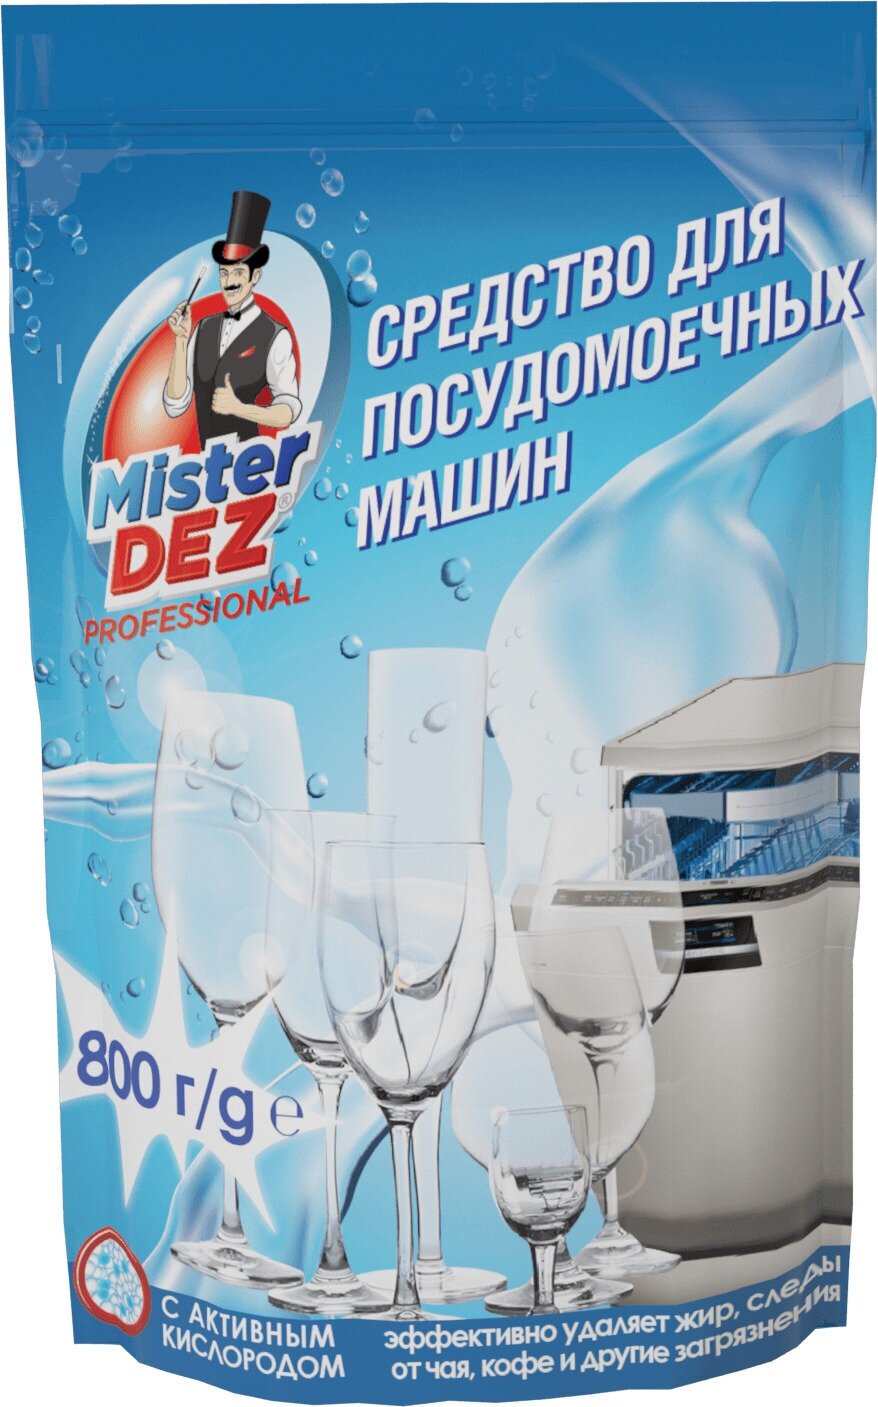 Порошок для посудомоечной машины Mister Dez порошок Professional